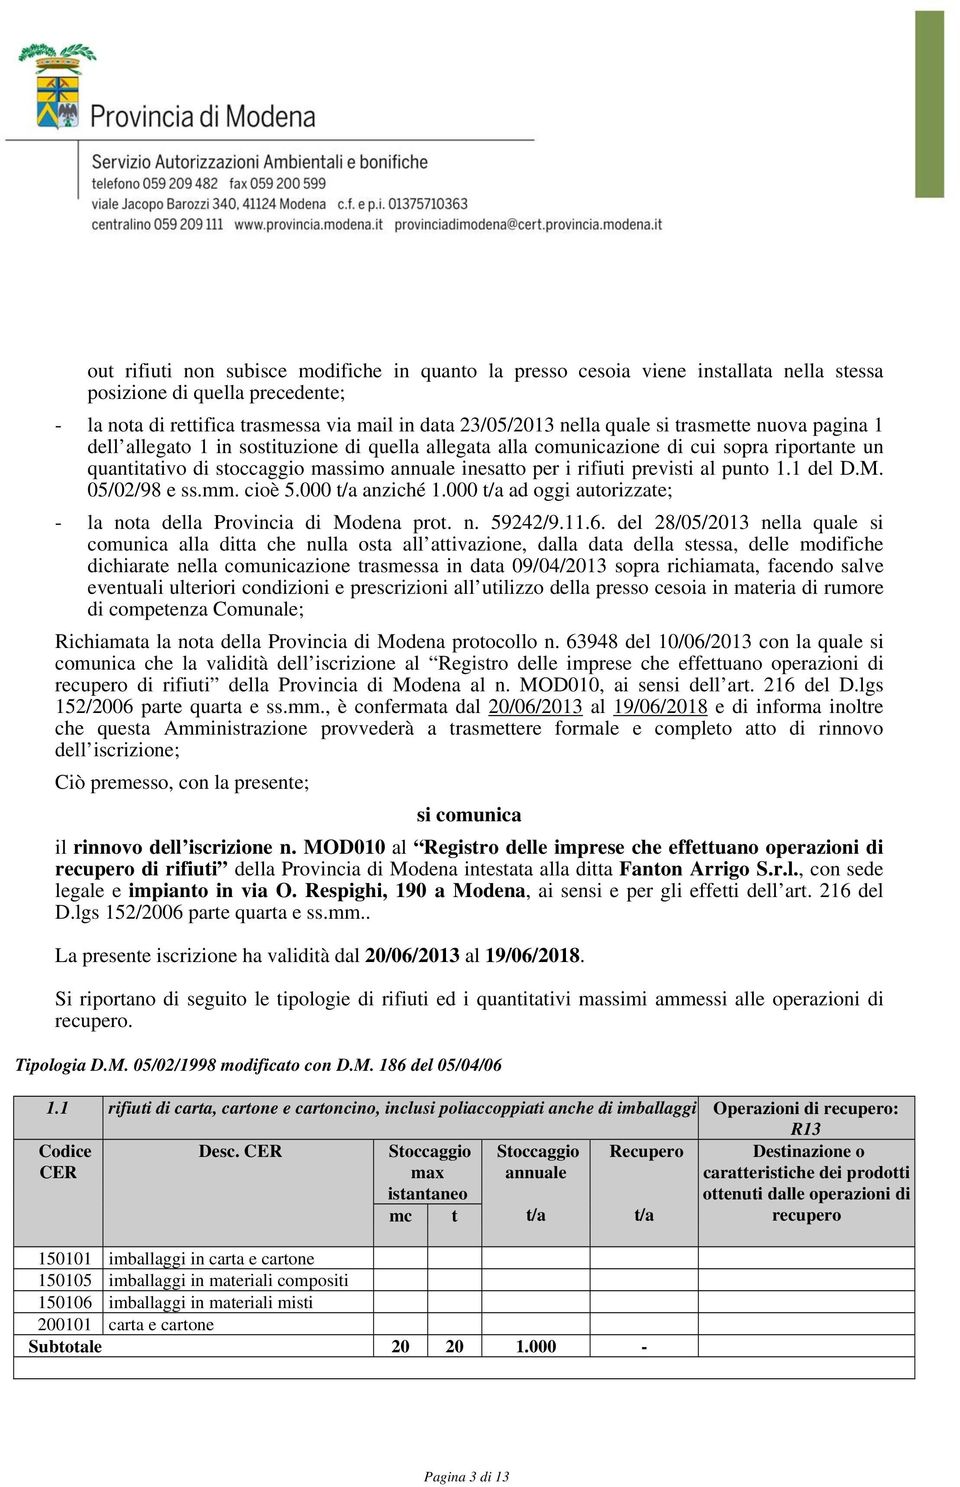 punto 1.1 del D.M. 05/02/98 e ss.mm. cioè 5.000 anziché 1.000 ad oggi autorizzate; - la nota della Provincia di Modena prot. n. 59242/9.11.6.